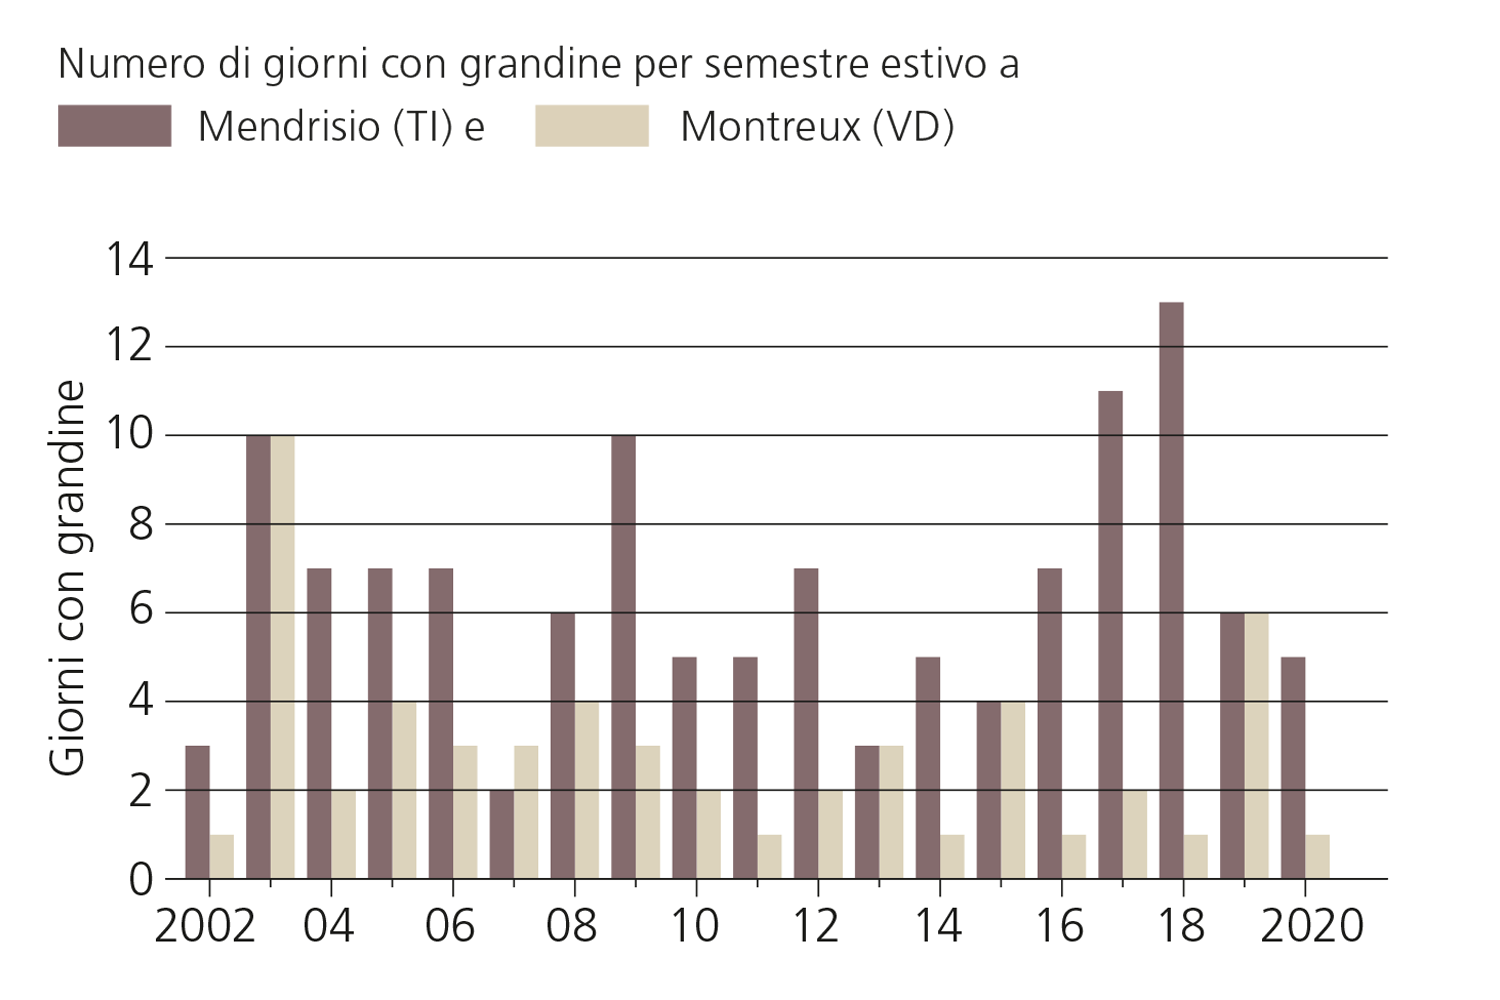 Serie temporale del numero di giorni di grandine per semestre estivo a Mendrisio (TI) e Montreux (VD) dal 2002 al 2020.